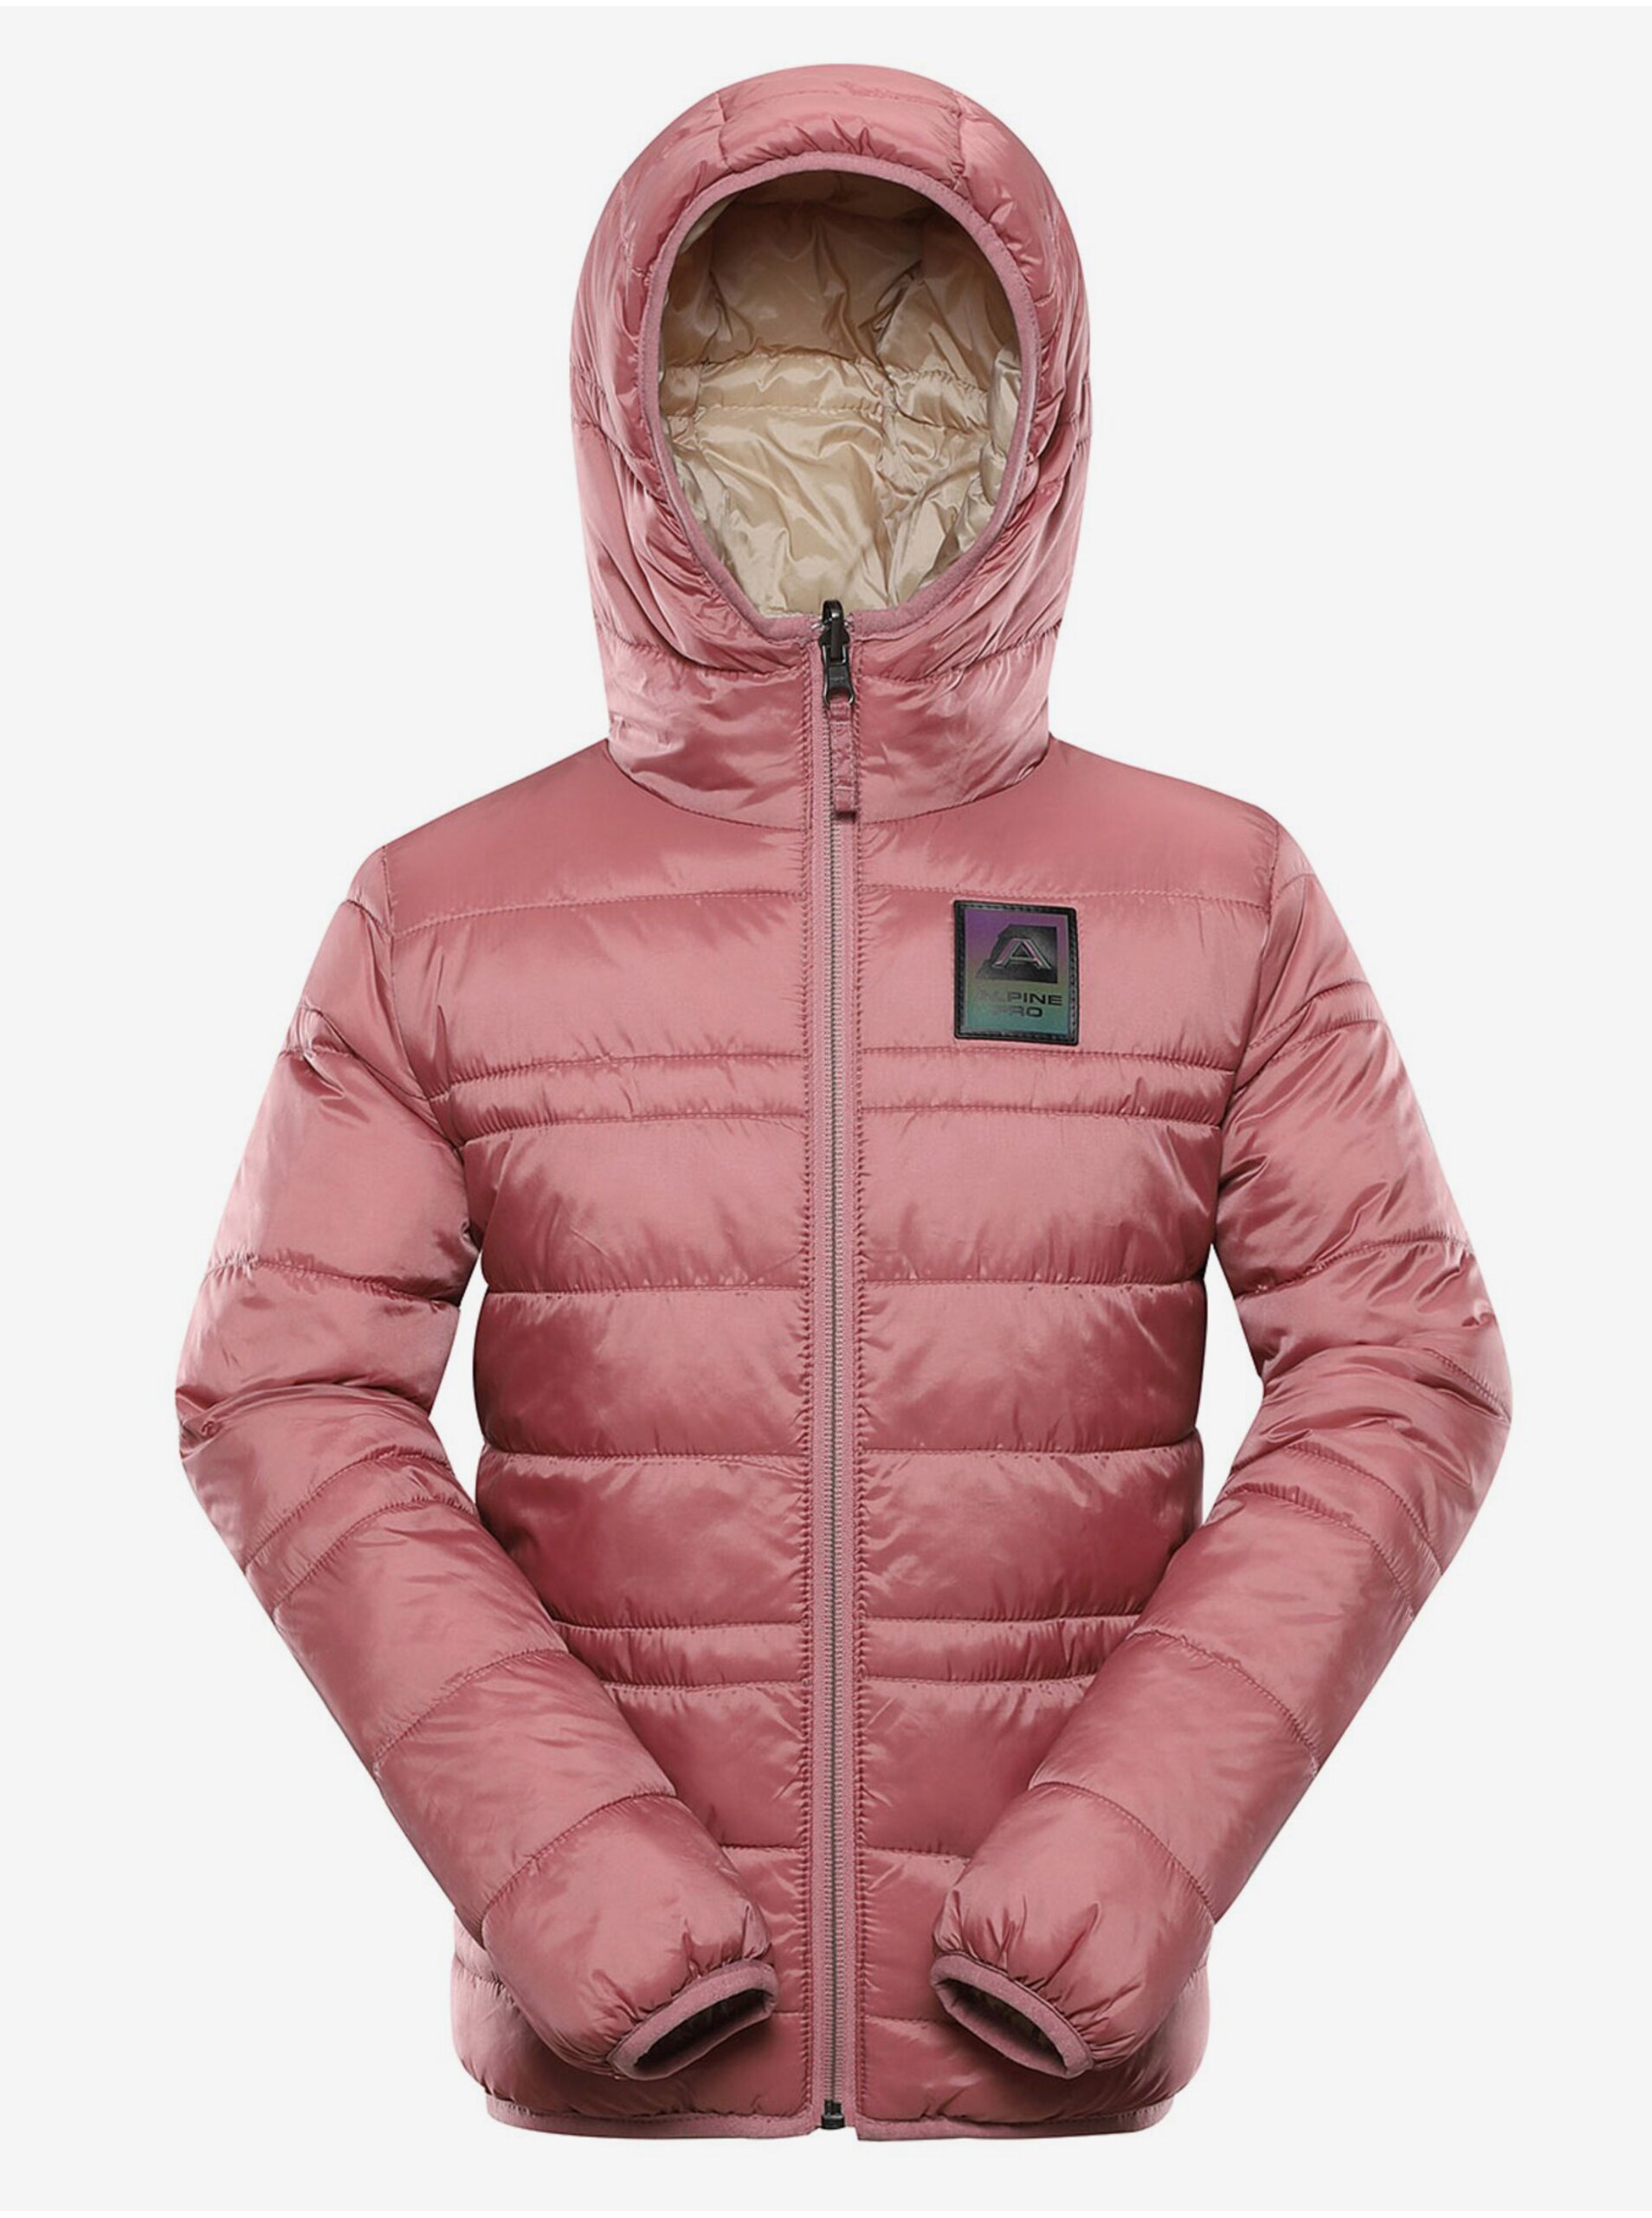 E-shop Béžovo-ružová detská obojstranná zimná bunda ALPINE PRE EROMO